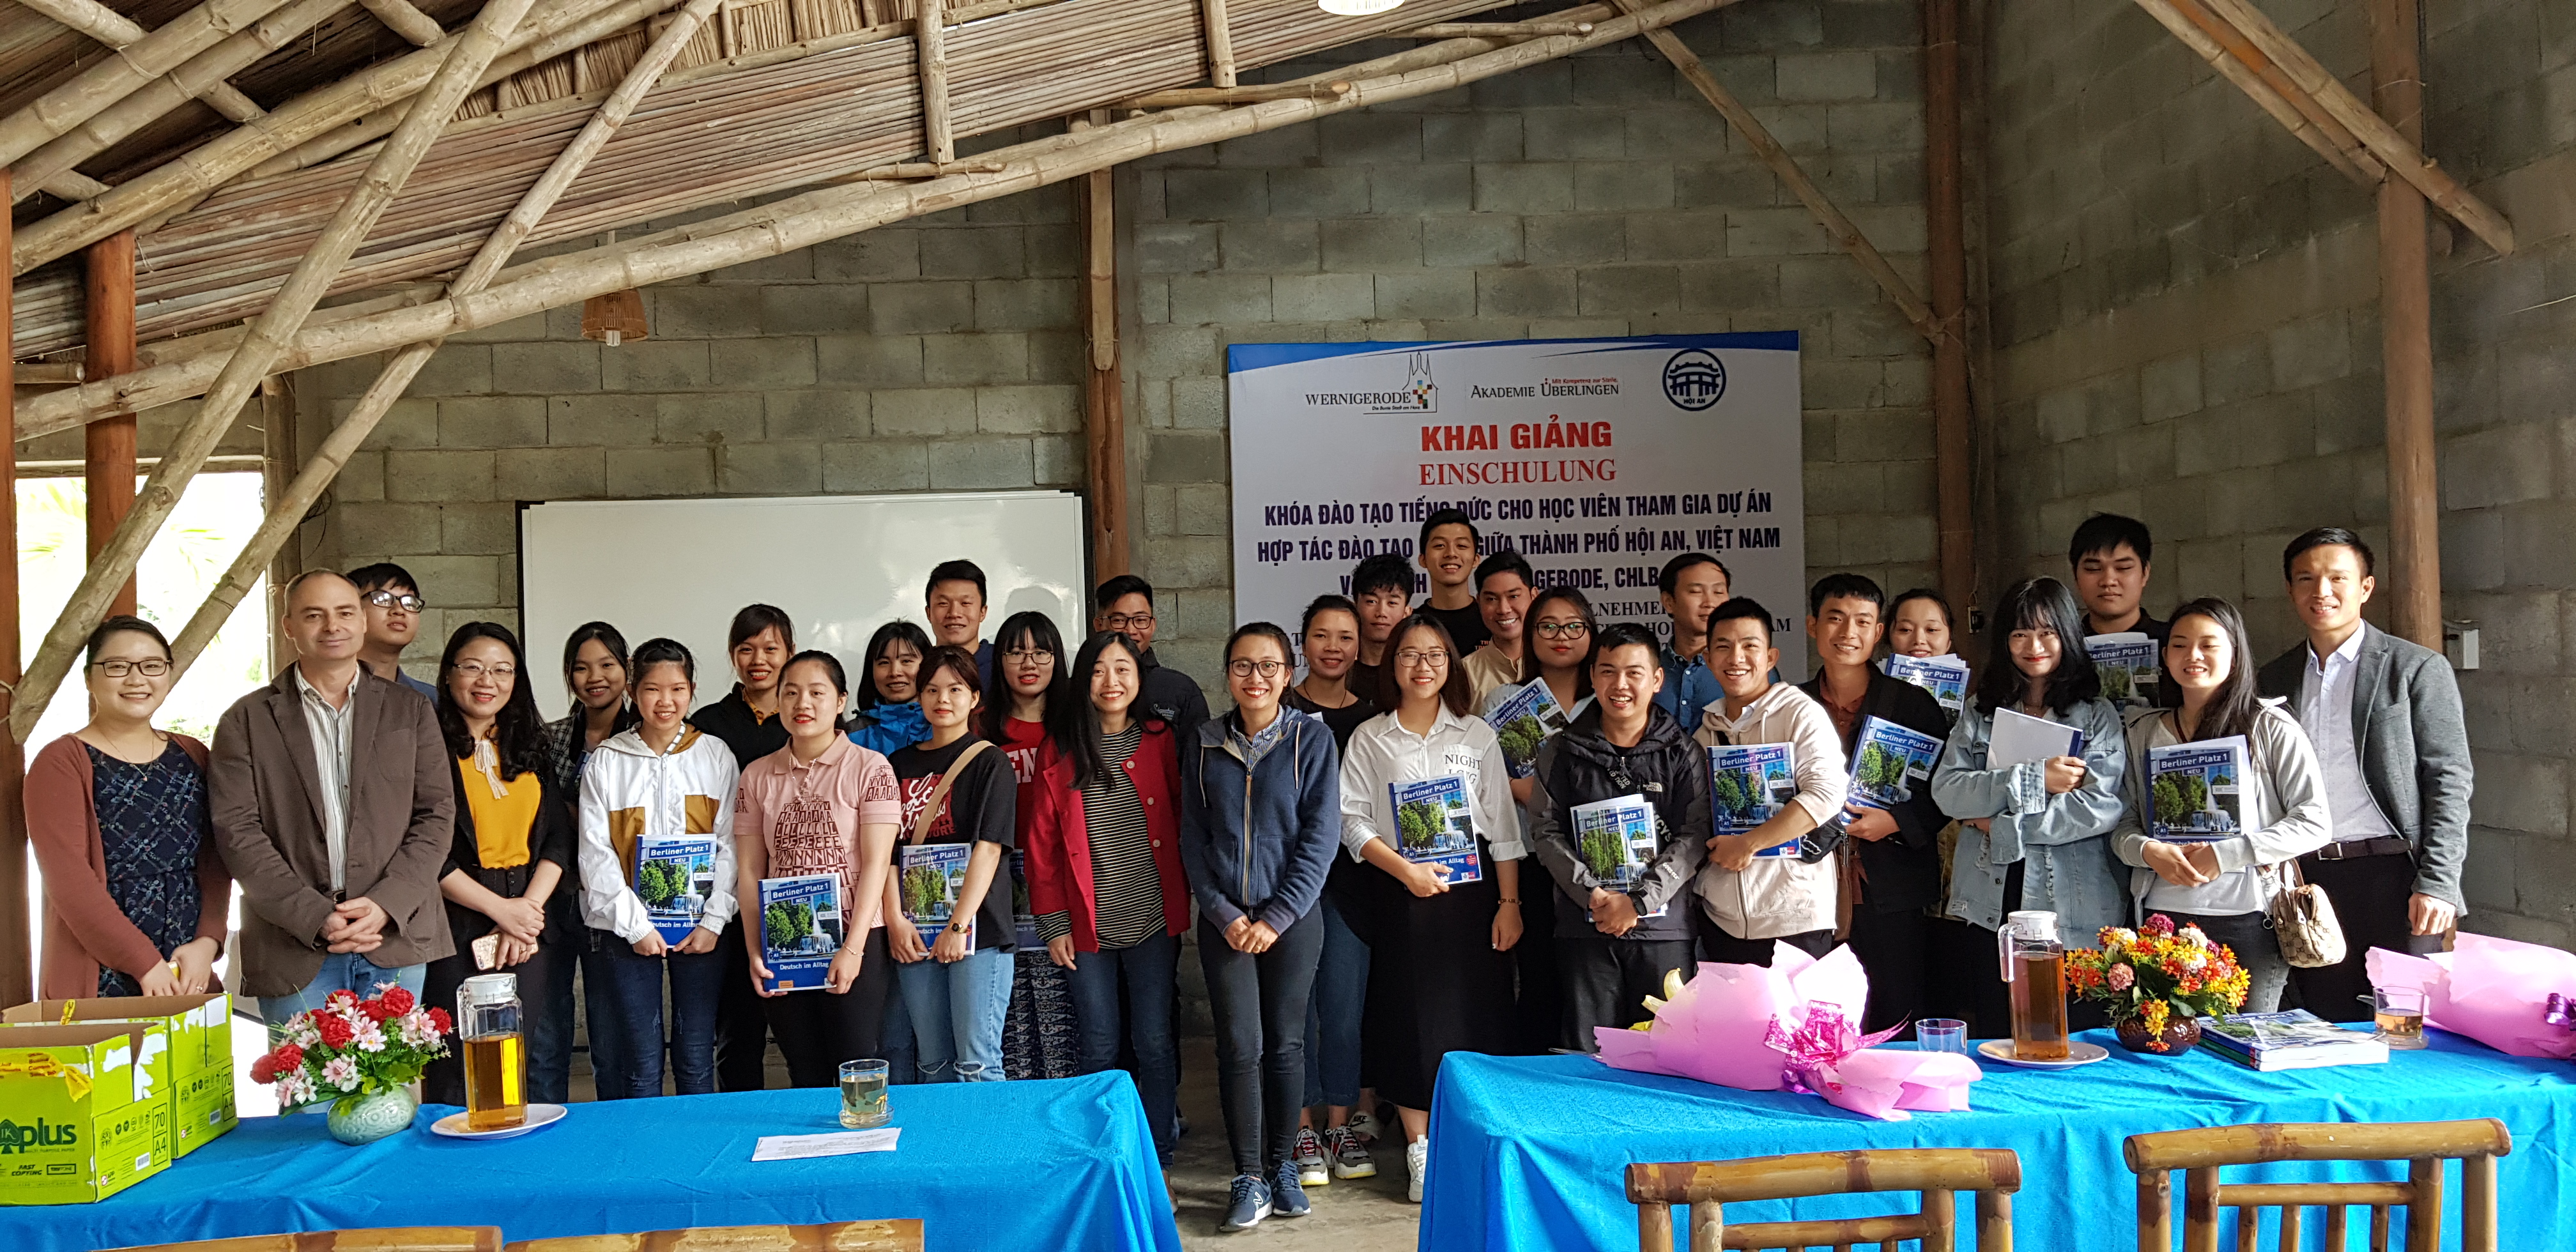 Teilnehmer des Berufsausbildungs- und Fachkräfteprojektes in Hoi An © Akademie Überlingen